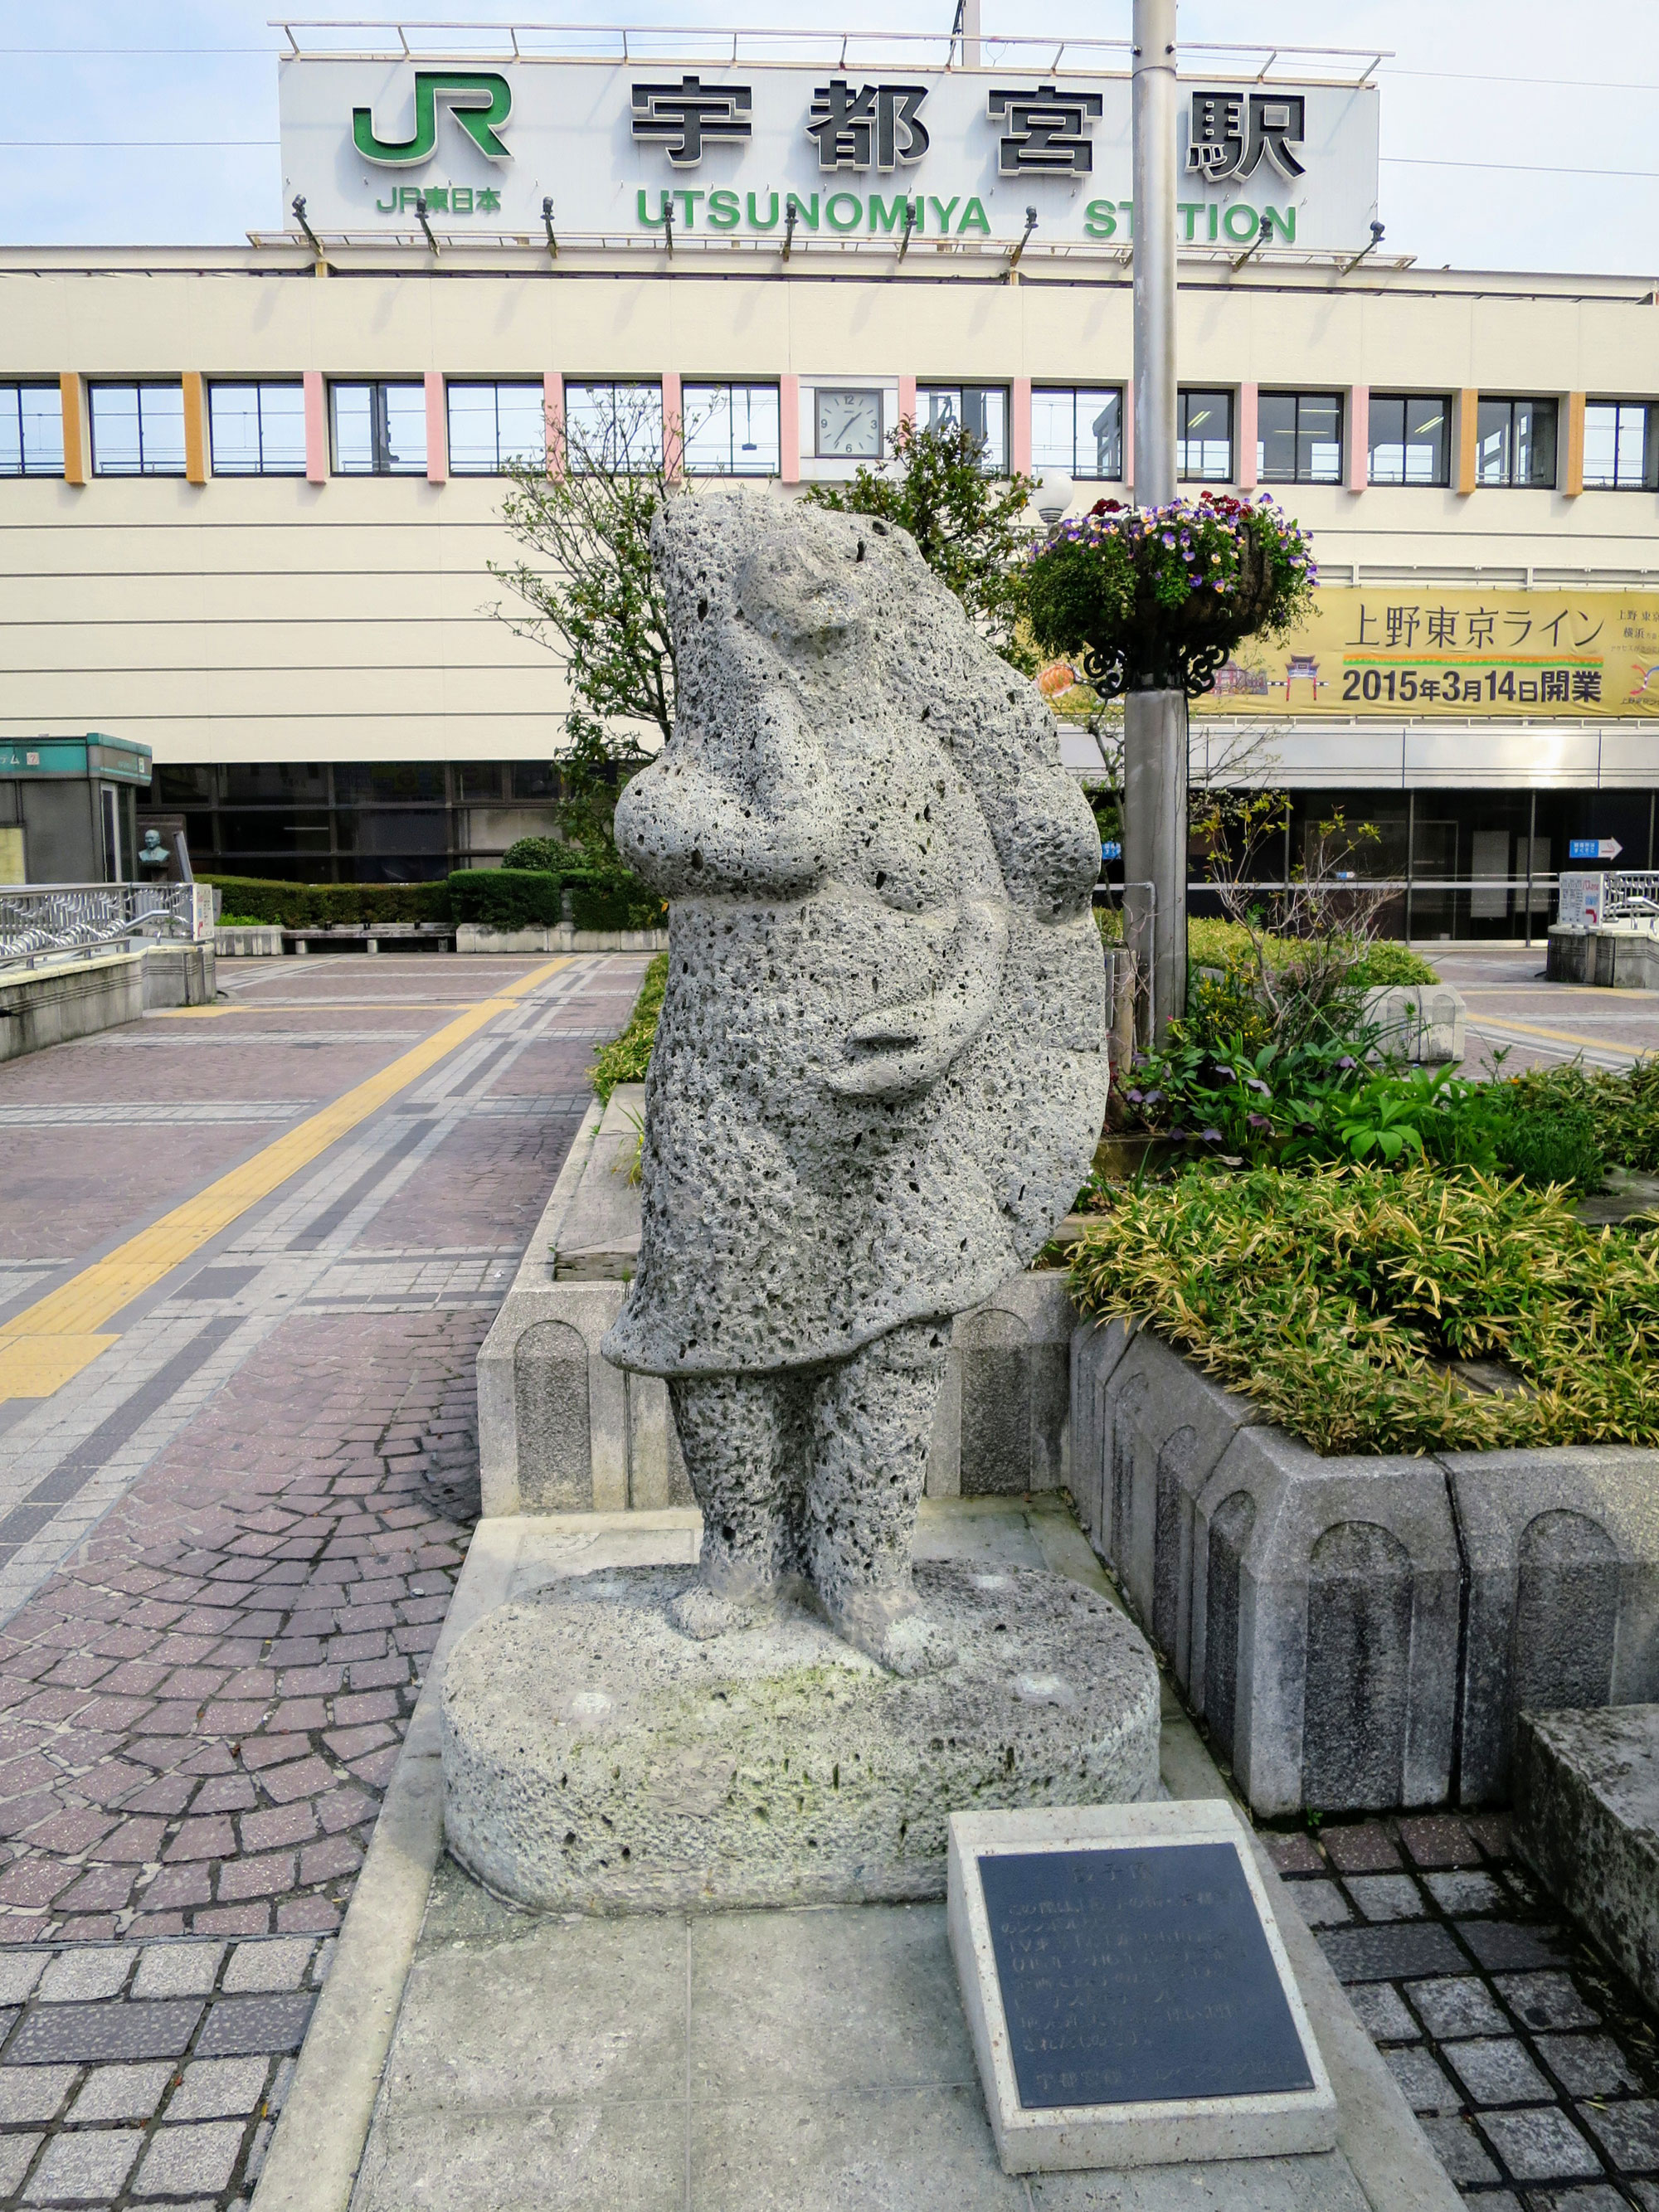 Die Stadt hat sogar eine Gyoza-Statue.